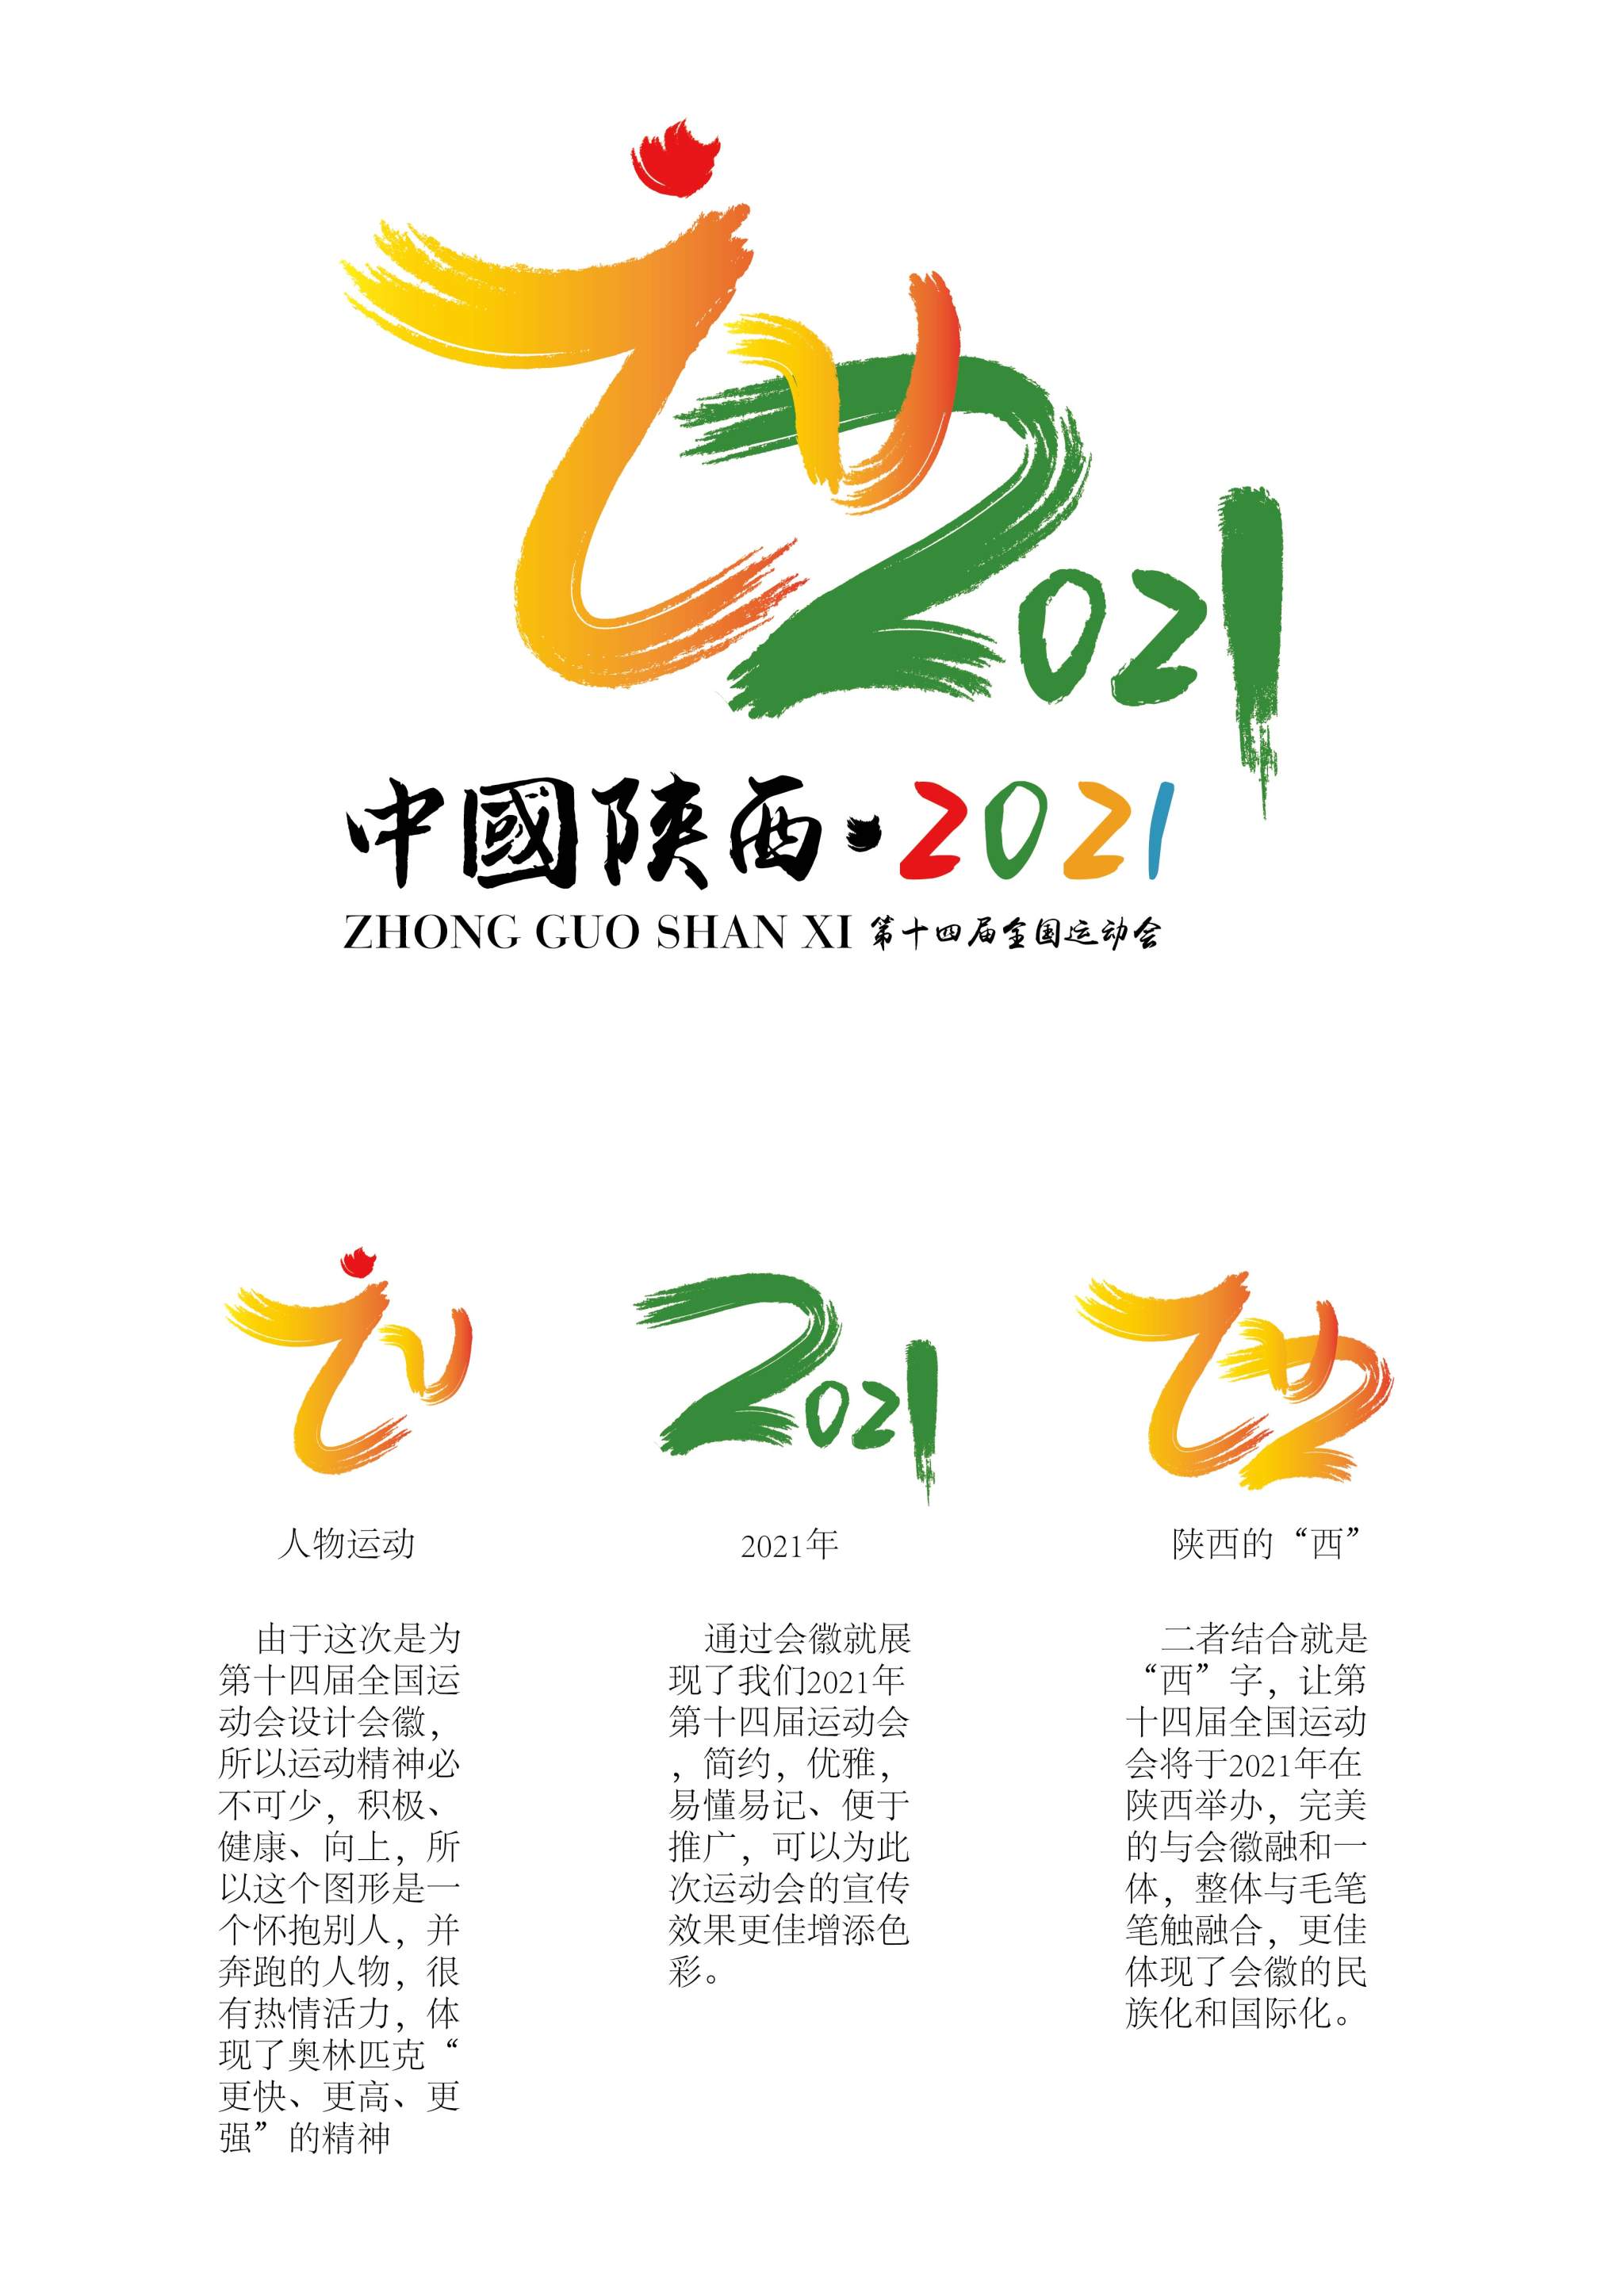 2021年第十四届全国运动会"陕西"会徽创意设计